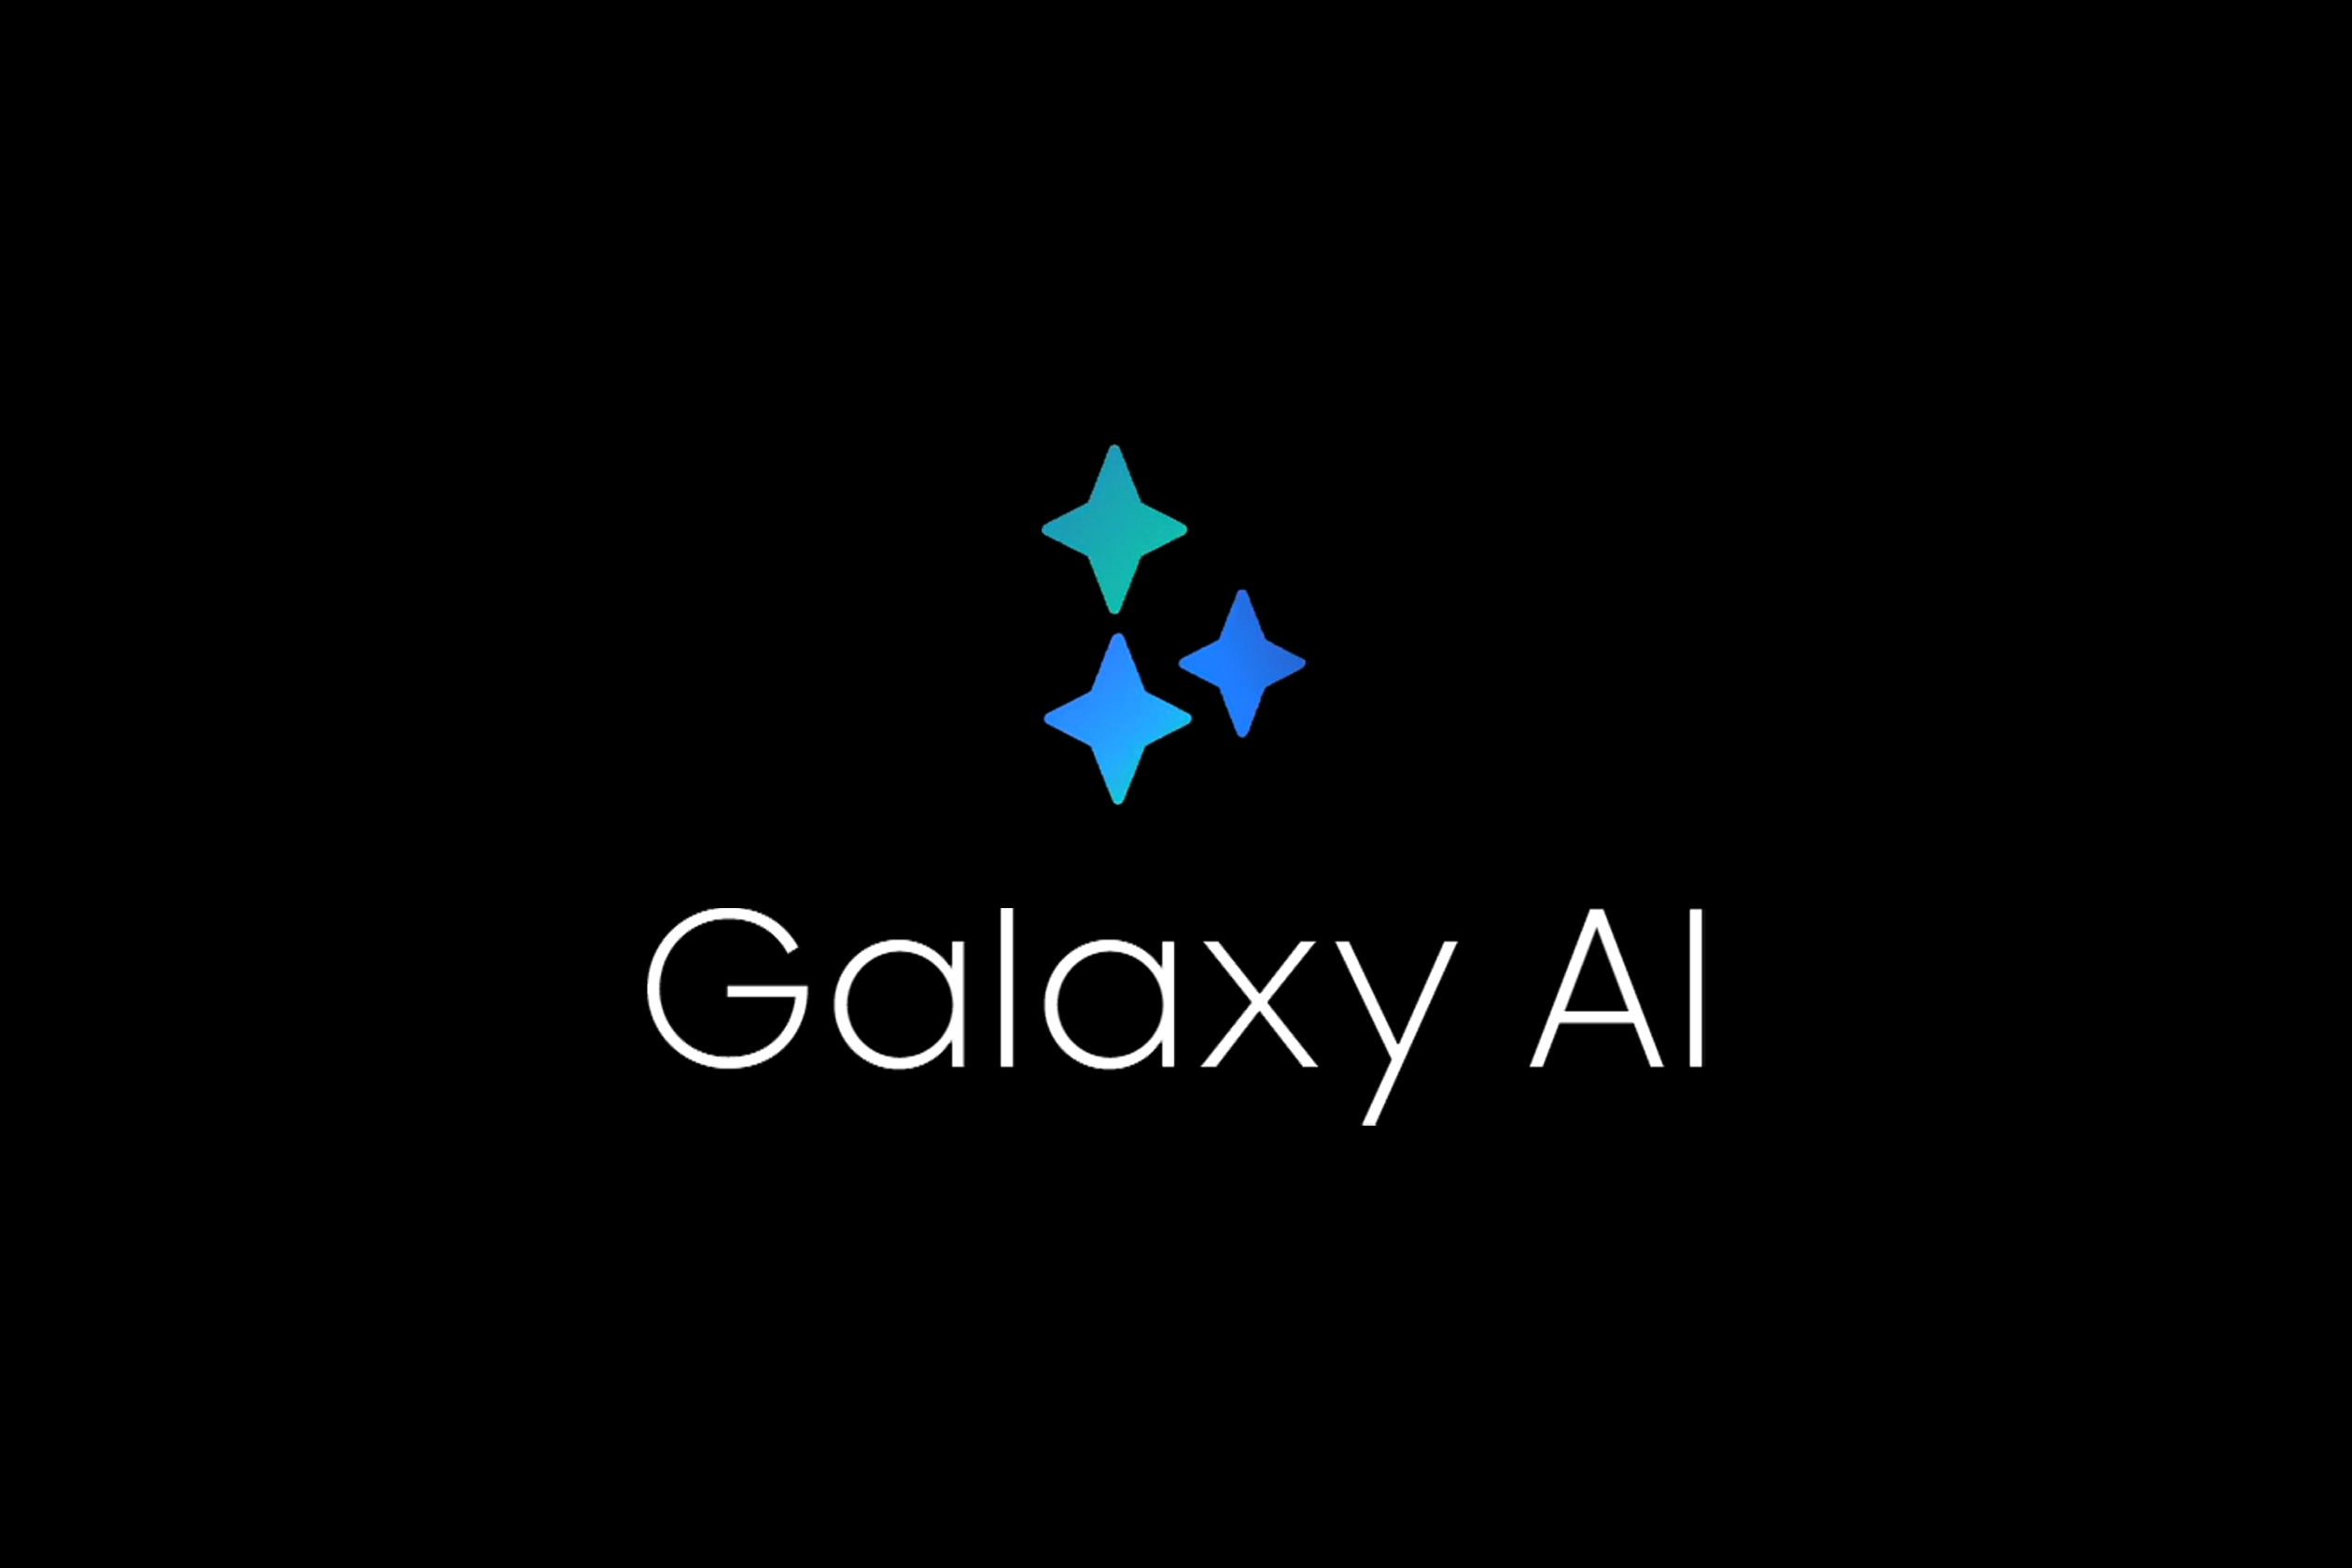 Galaxy AI Di China Menggunakan Teknologi Baidu Menggantikan Google